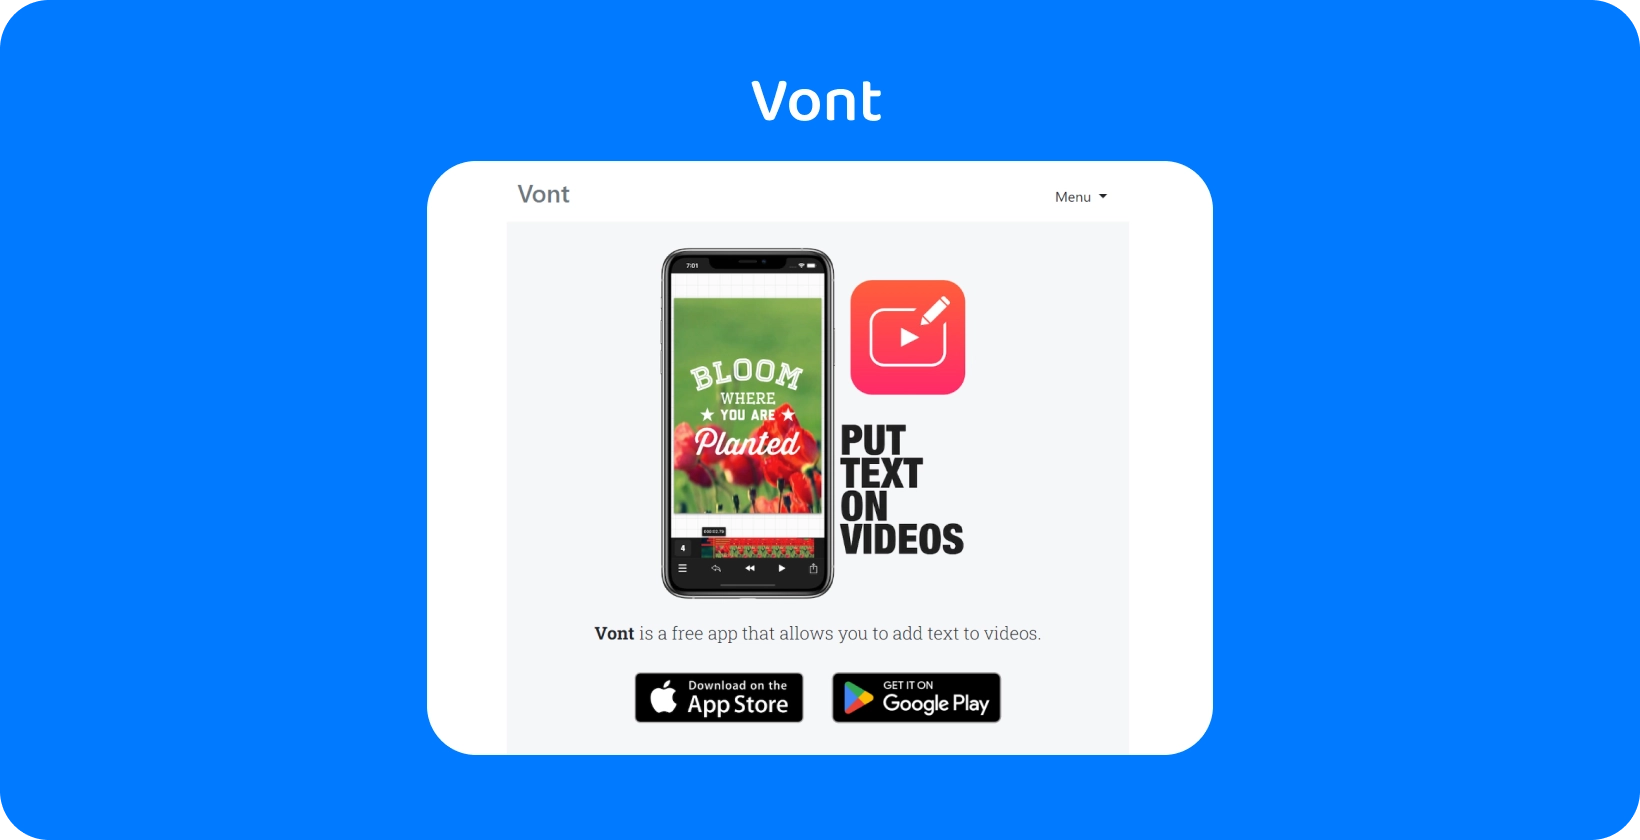 Smartphone exibindo Vont interface do aplicativo, destacando seu recurso para adicionar texto em vídeos, disponível em App Store e Google Play